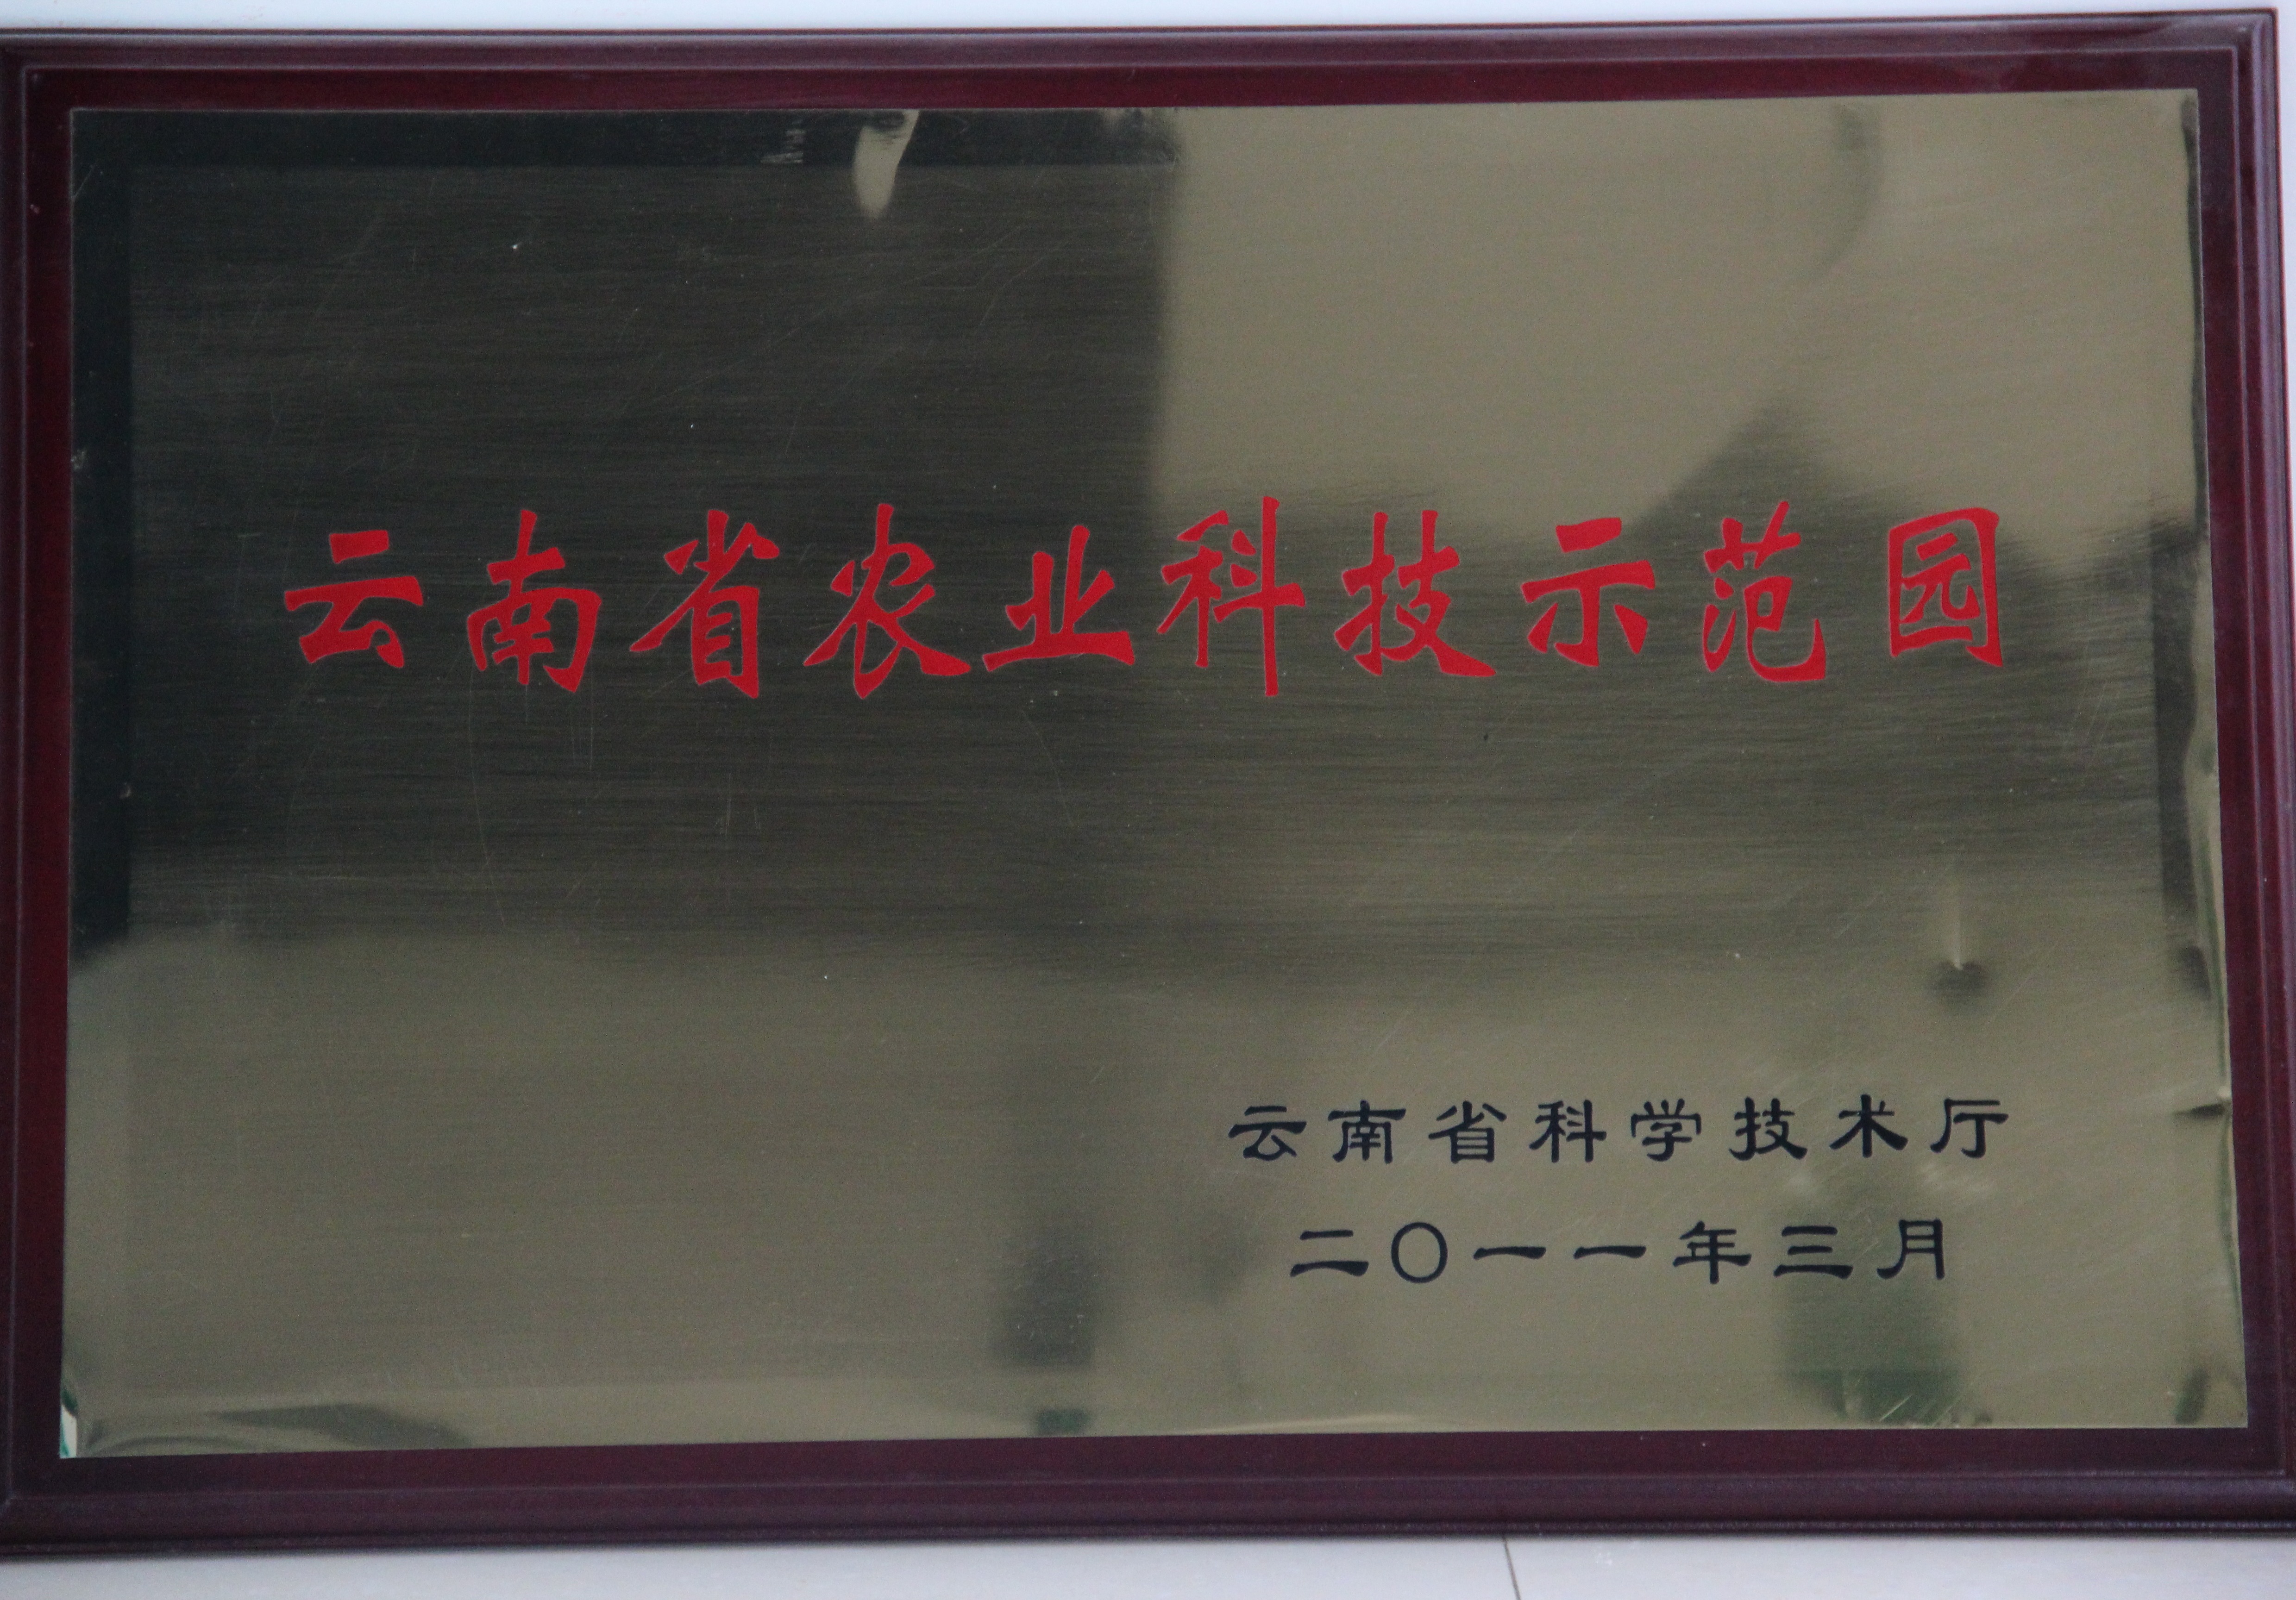 2011年苗乡三七科技示范园被认定为首批云南省农业科技示范园